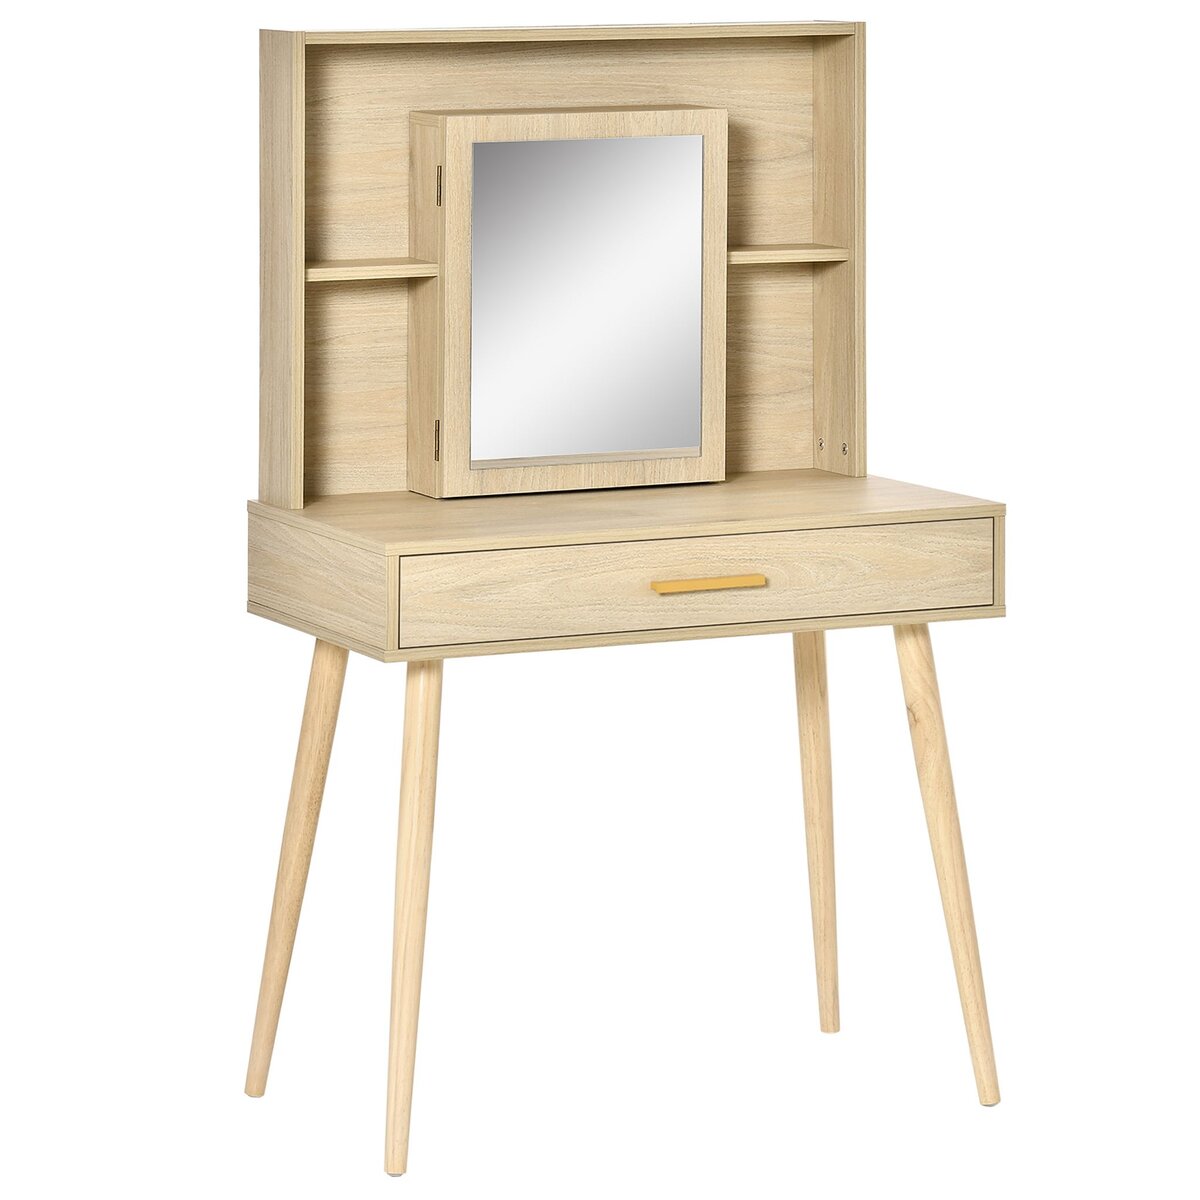 HOMCOM Coiffeuse design scandinave - table de maquillage - grand tiroir, 3 étagères, 2 niches, placard porte miroir - piètement hévéa panneaux particules aspect chêne clair